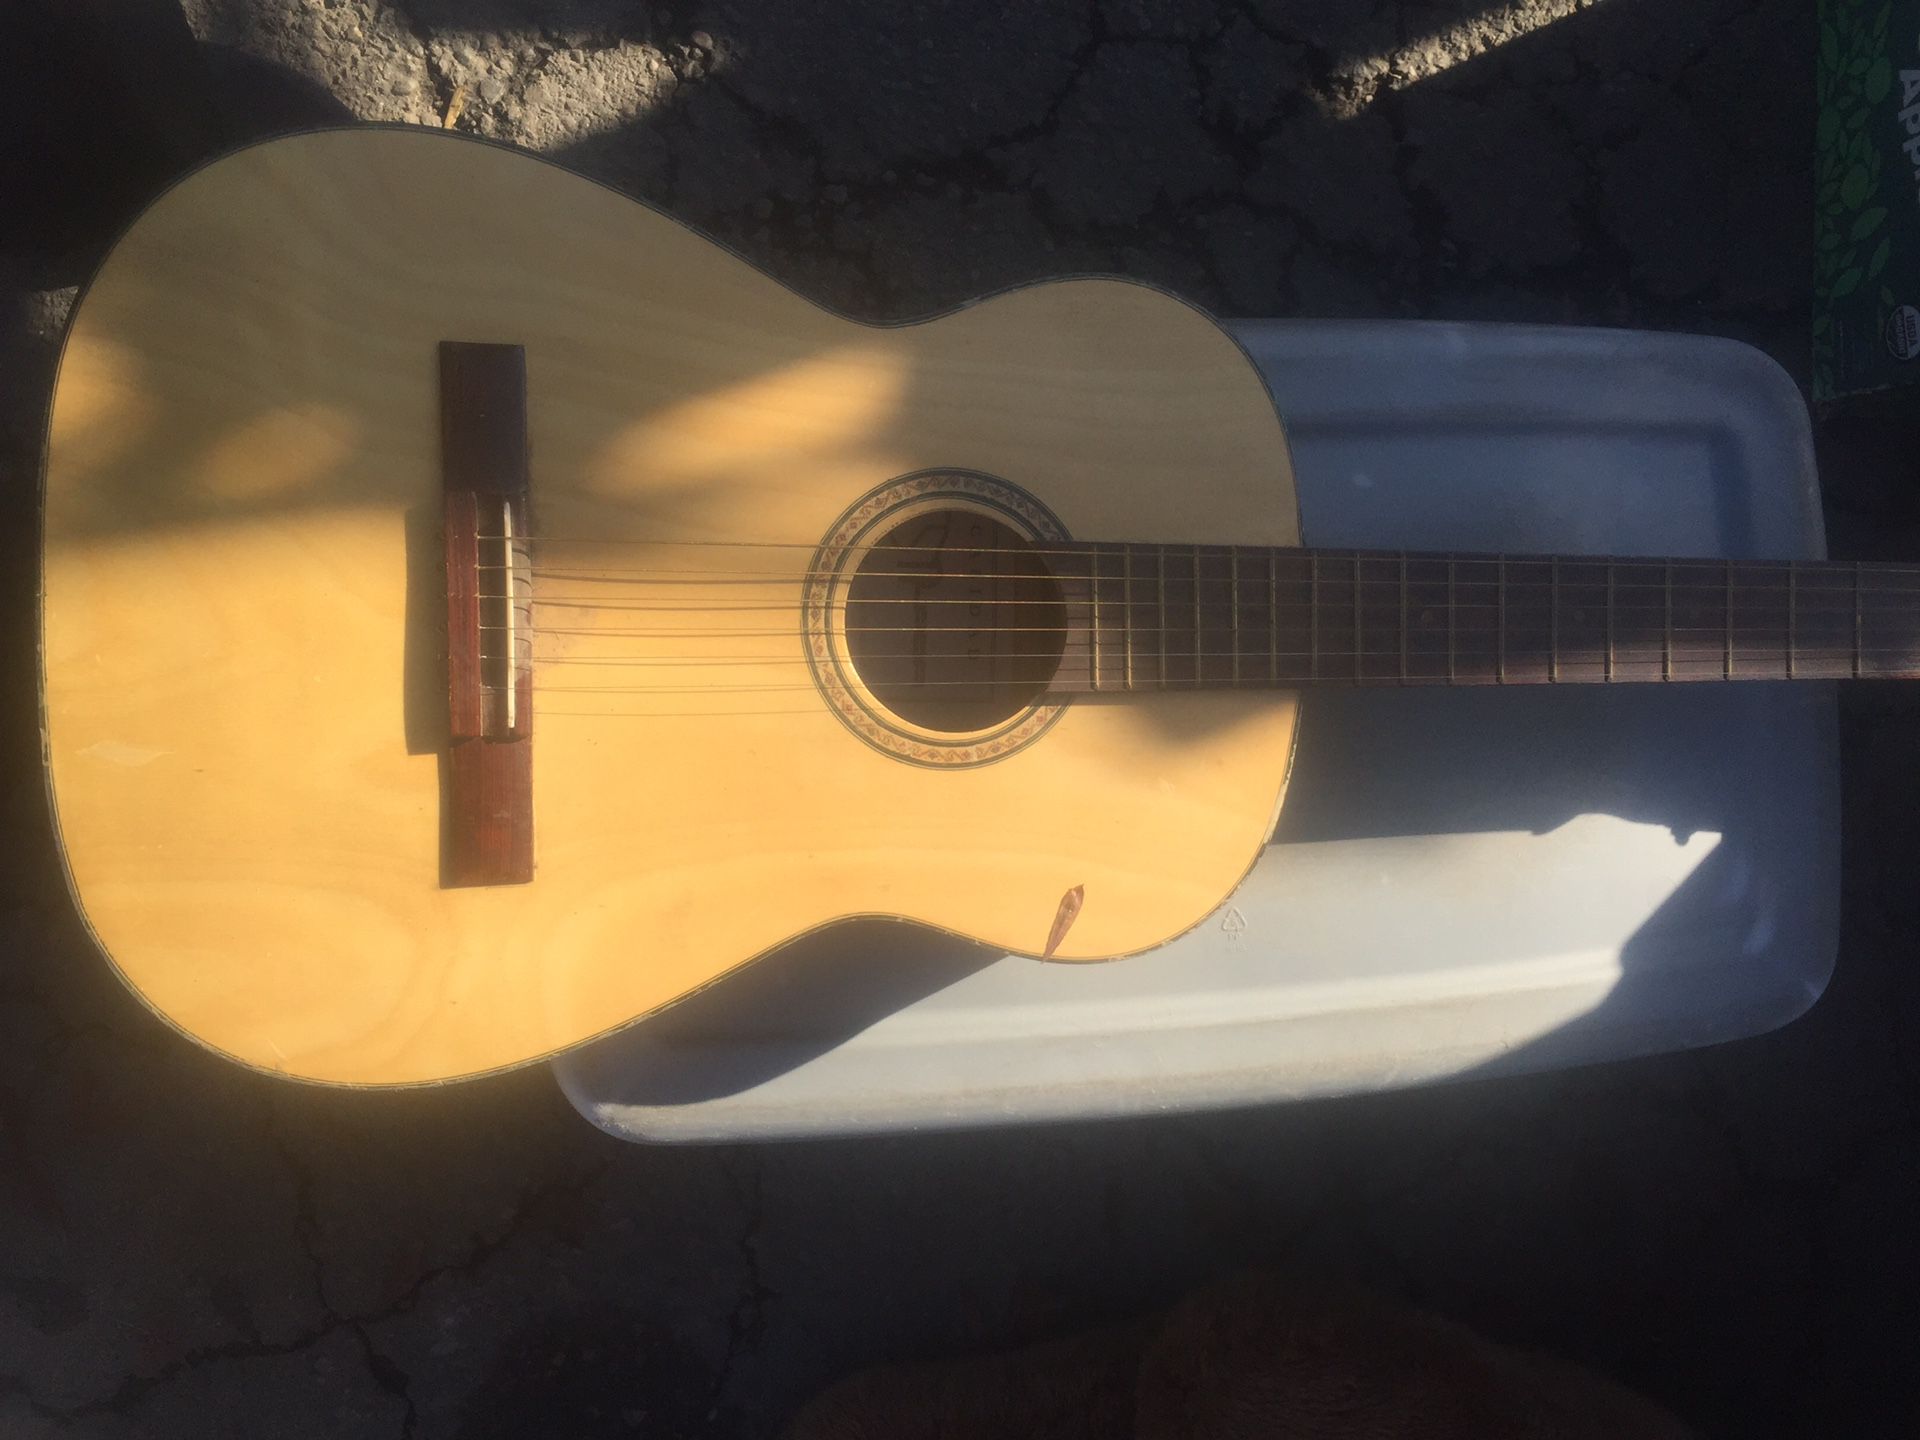 Estrada Calidad Guitar $40